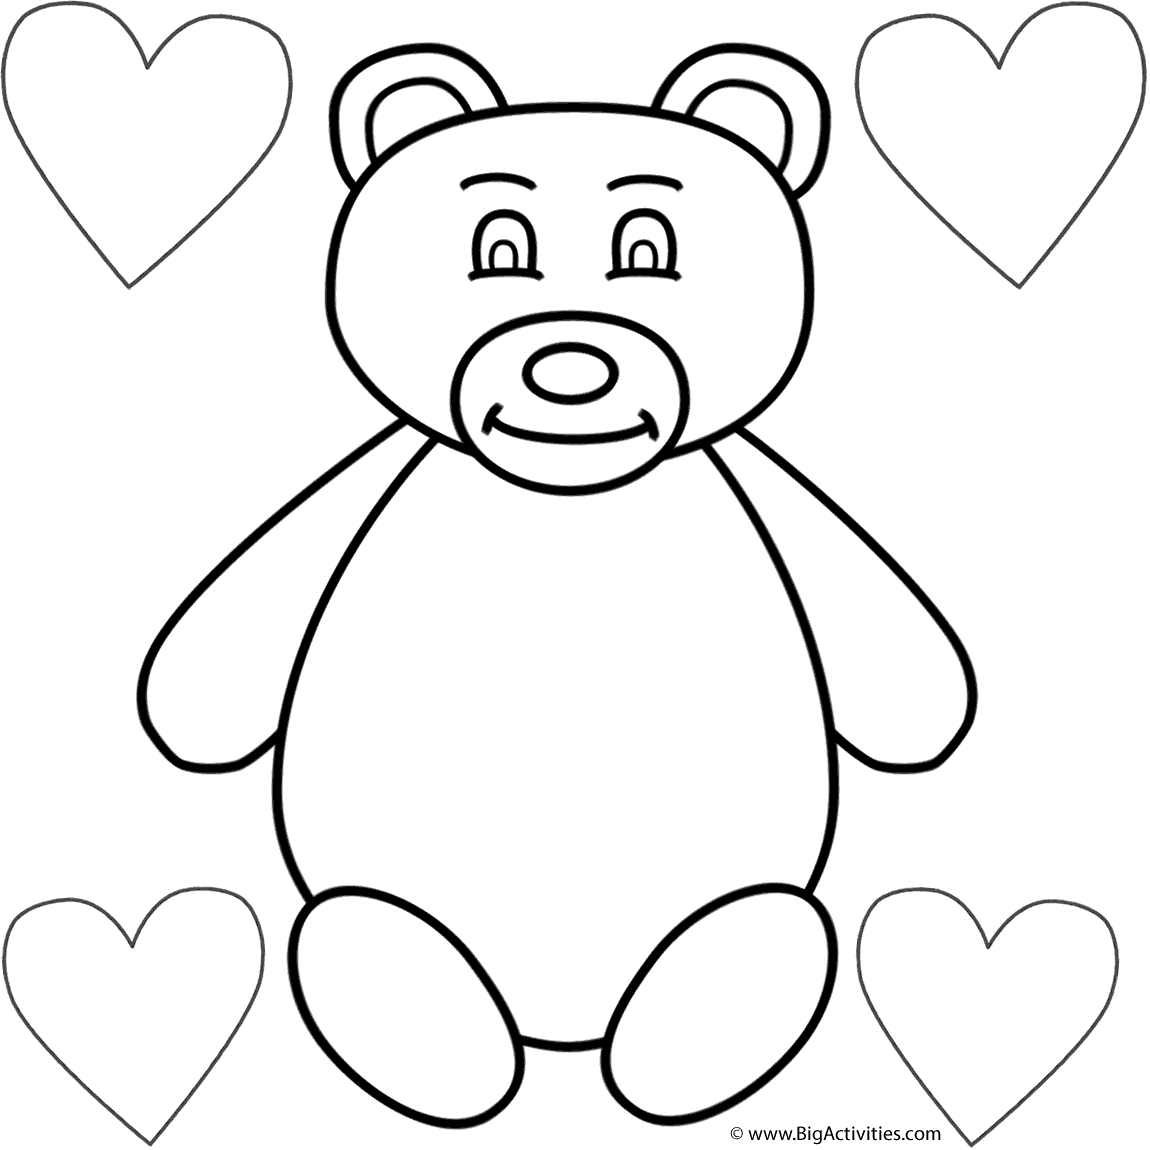 Teddy bear and four hearts